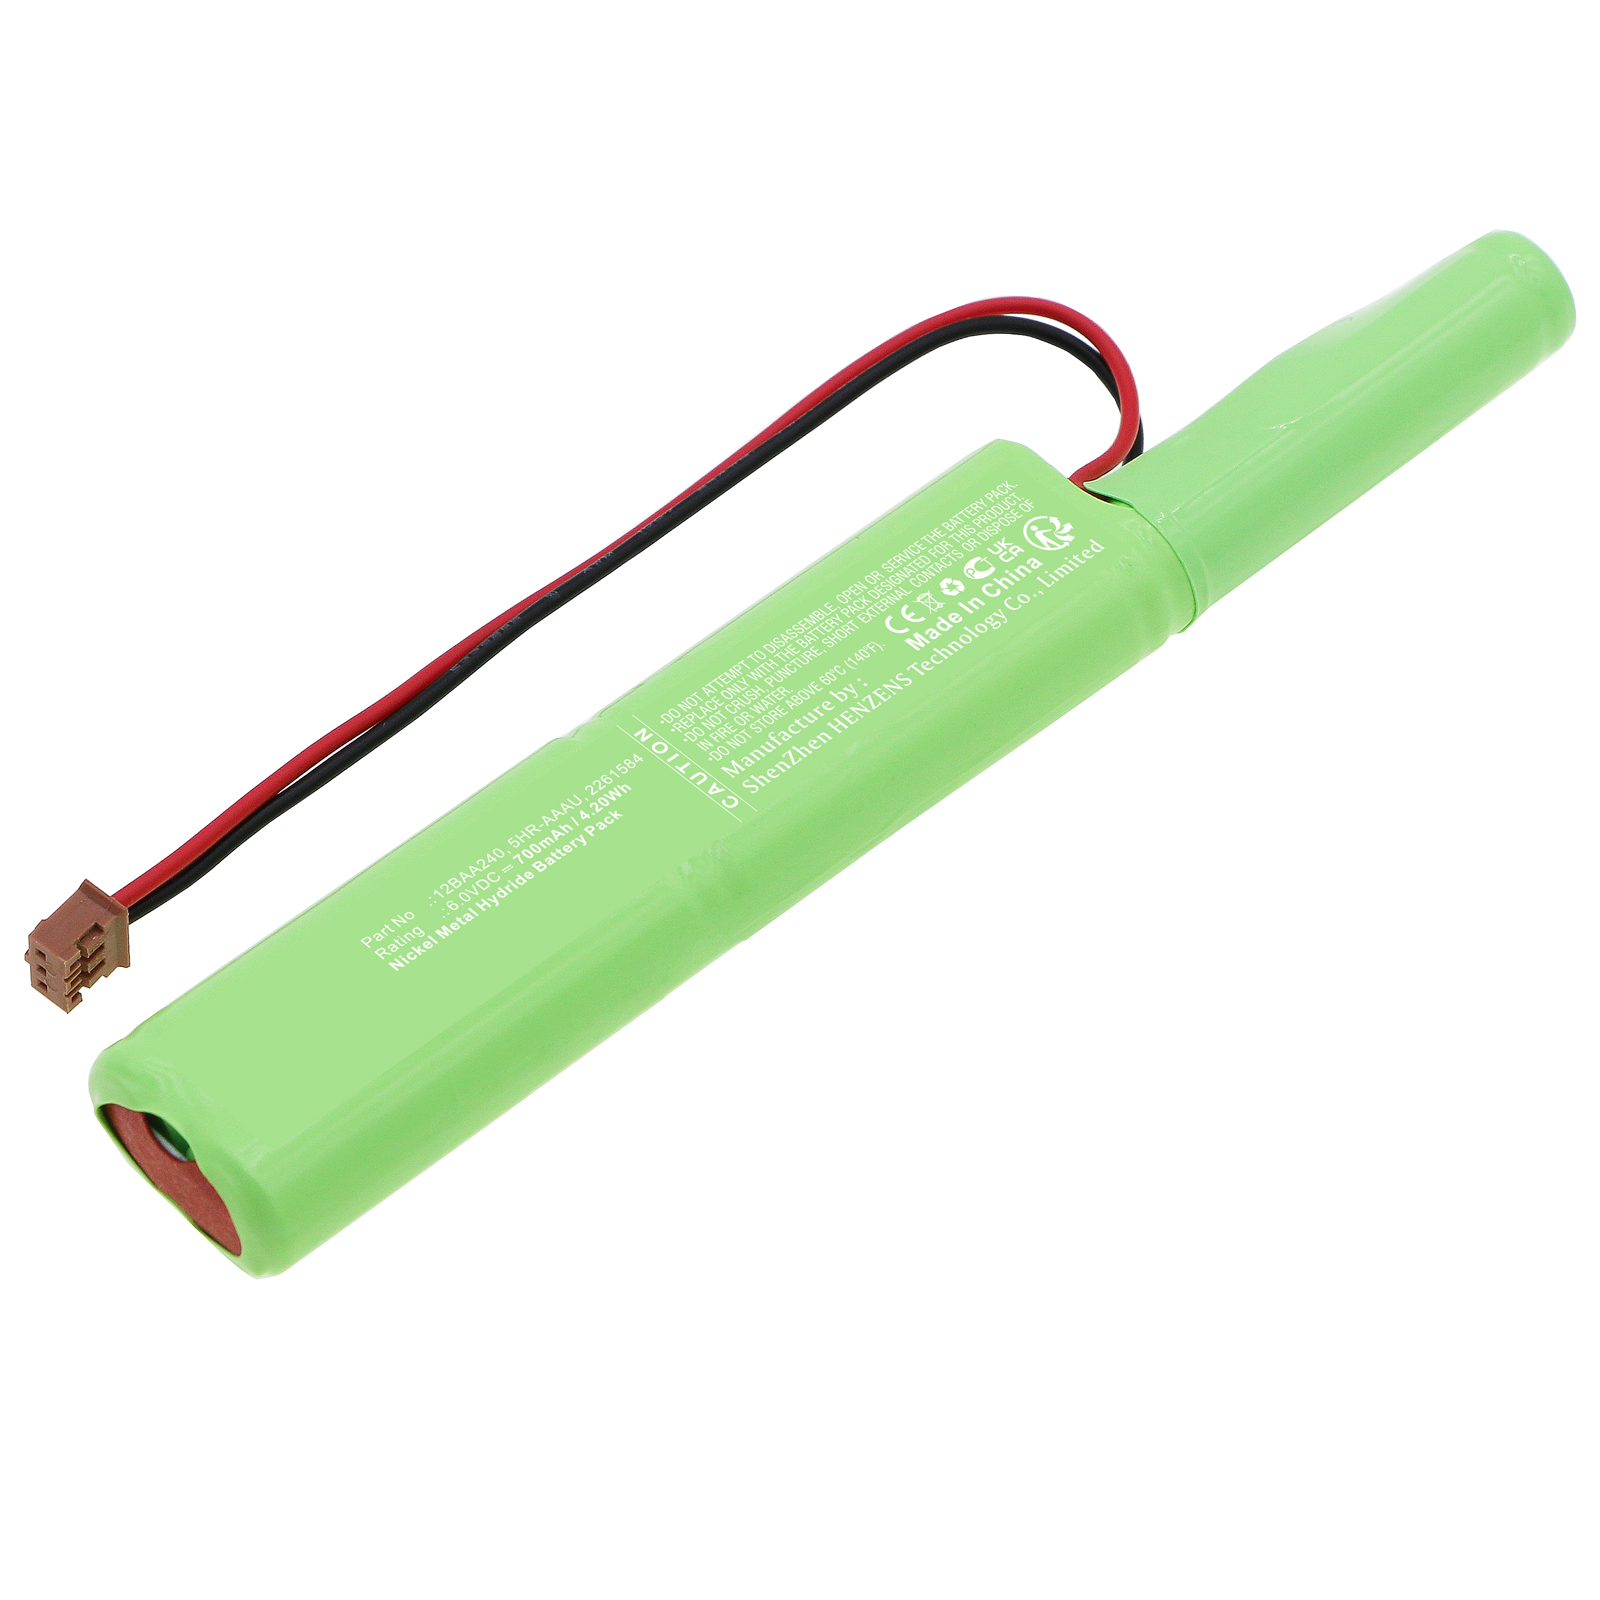 Batteries for MitutoyoEquipment